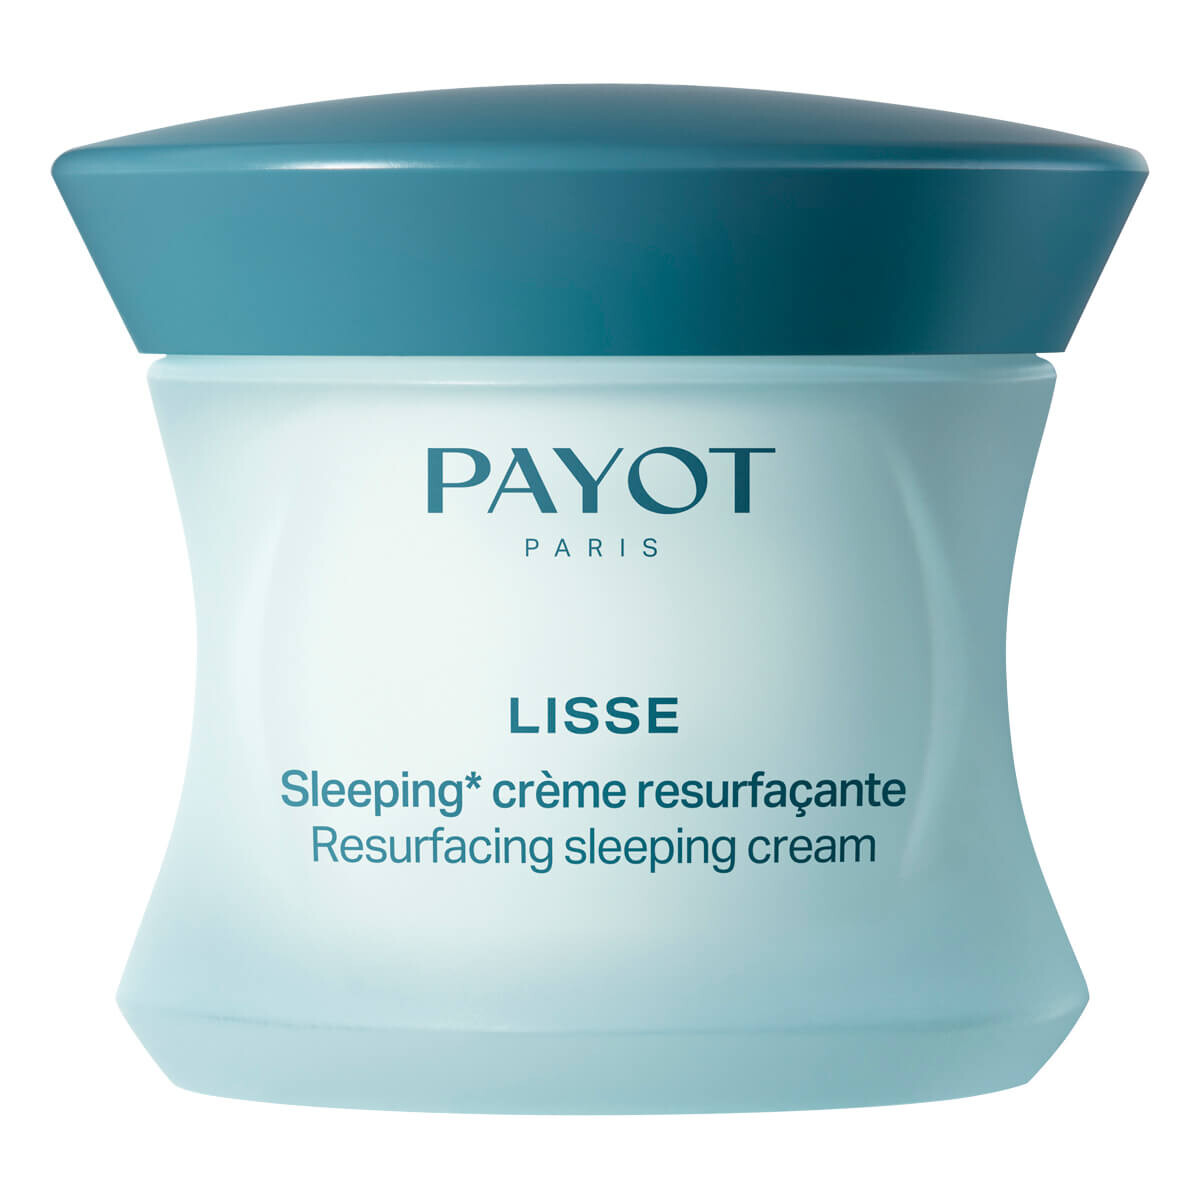 Billede af Payot Resurfacing Sleeping Cream, Lisse, 50 ml.